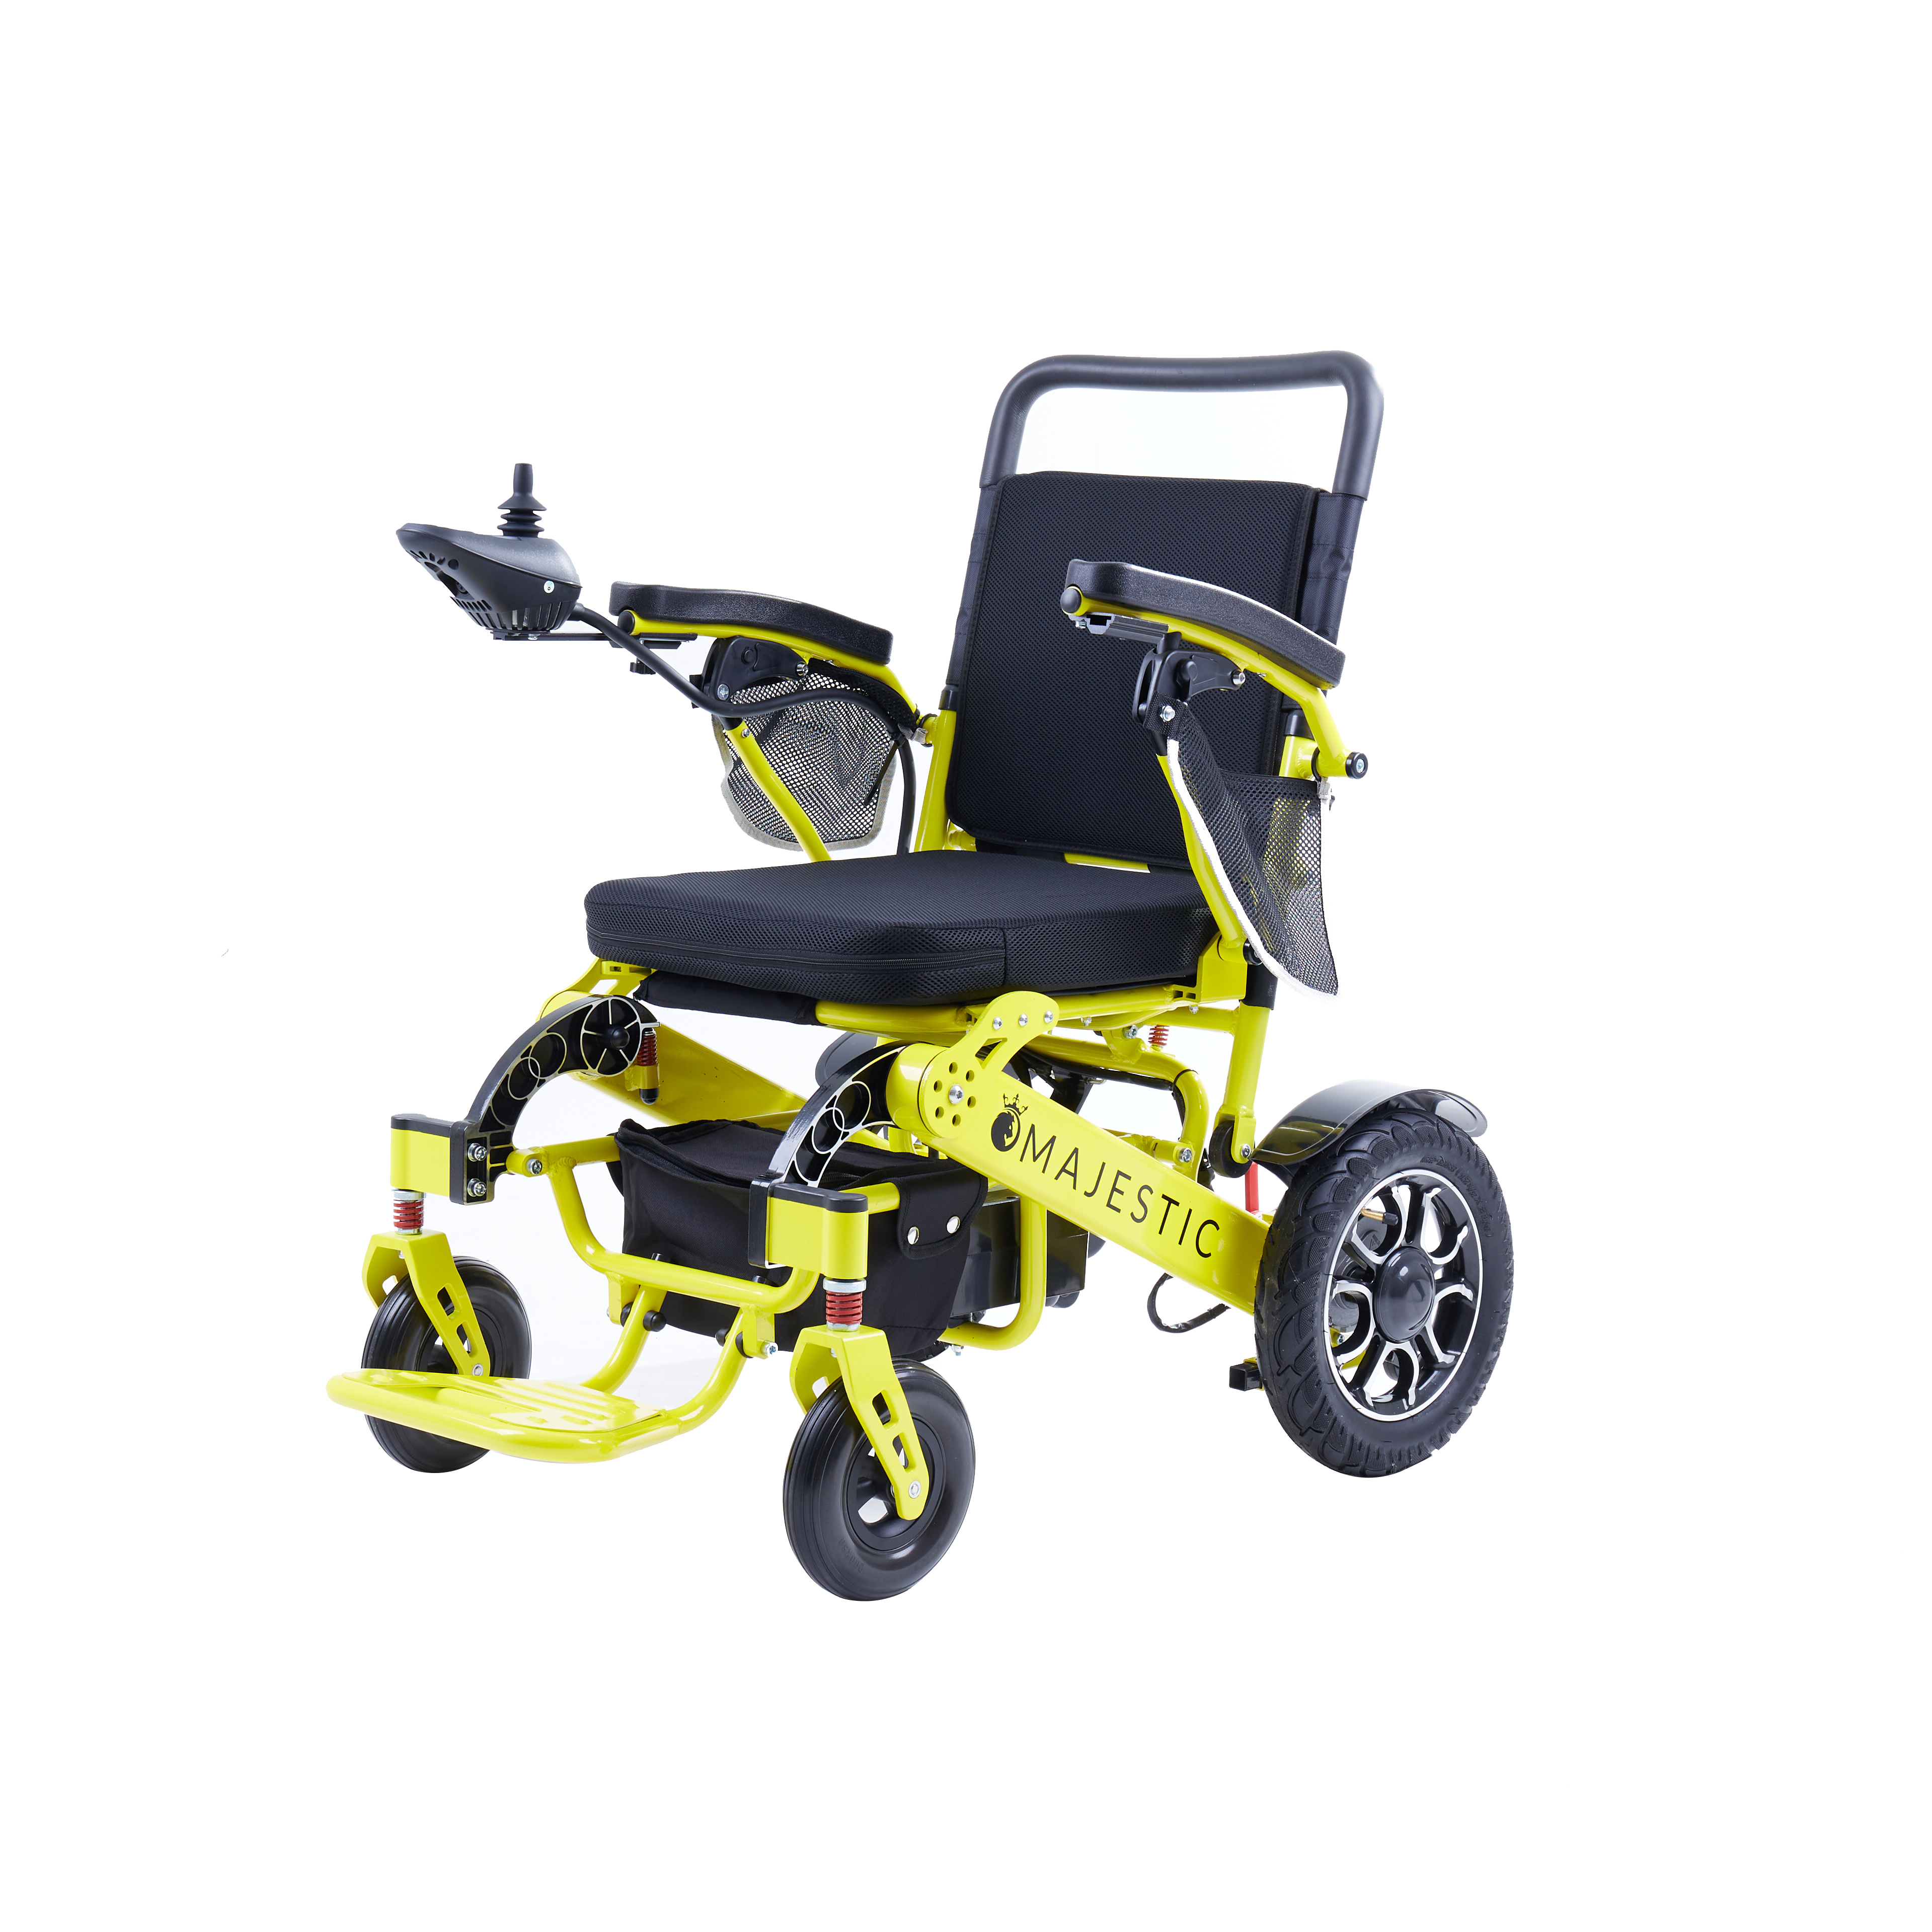 2022 Rollstuhl, elektrisch, leicht, faltbar, mit Kohlefaser-Materialien. Abgebildetes Bild